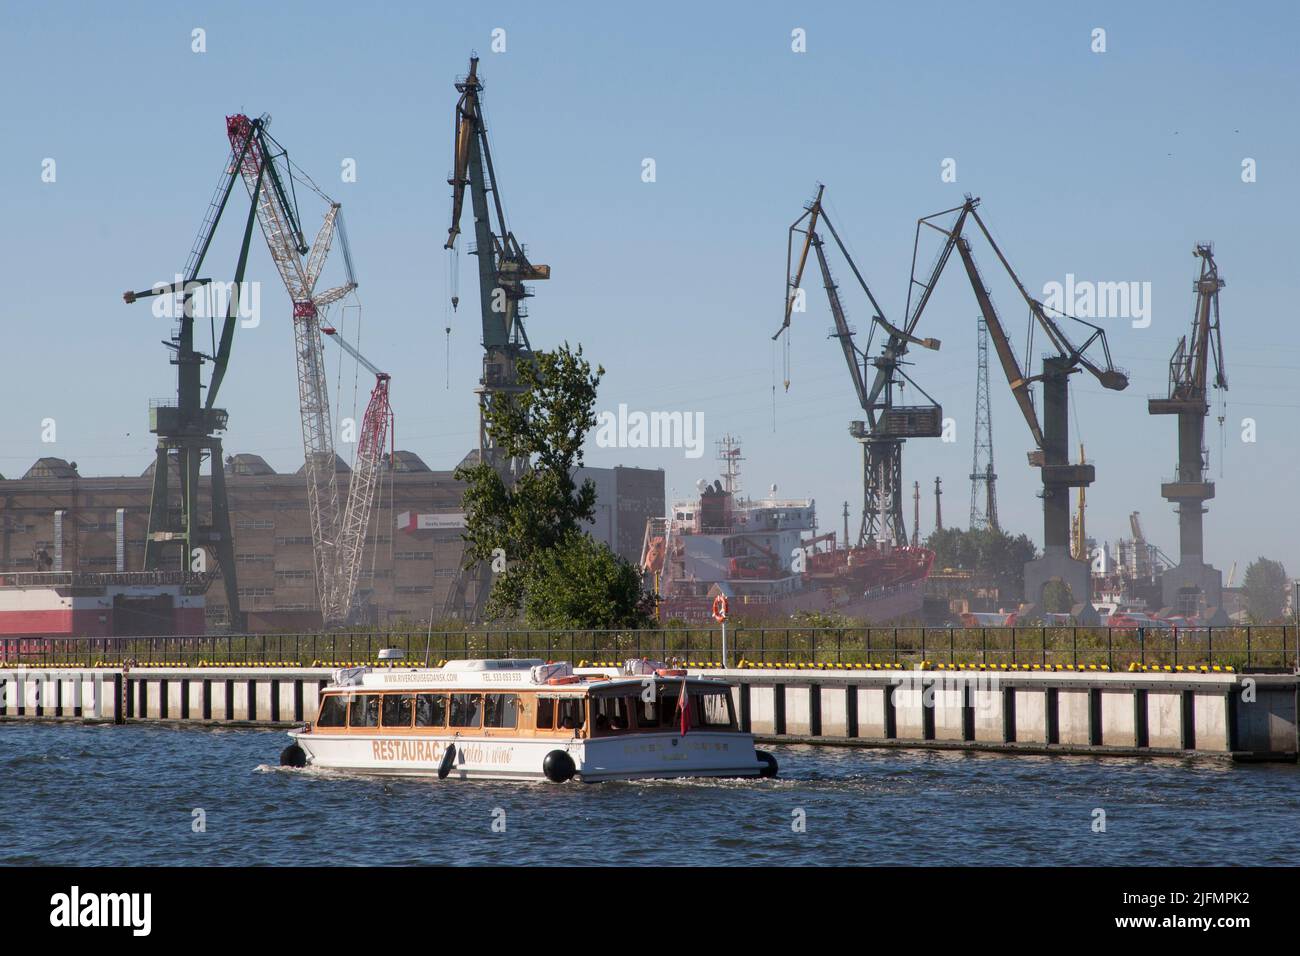 Crociera sul fiume in Chleb i Wino ristorante barca passa di fronte alle gru a Gdansk Shipyard, Polonia - crociera sul fiume da Chleb i Wino Stocznia Gdansk, Pol Foto Stock